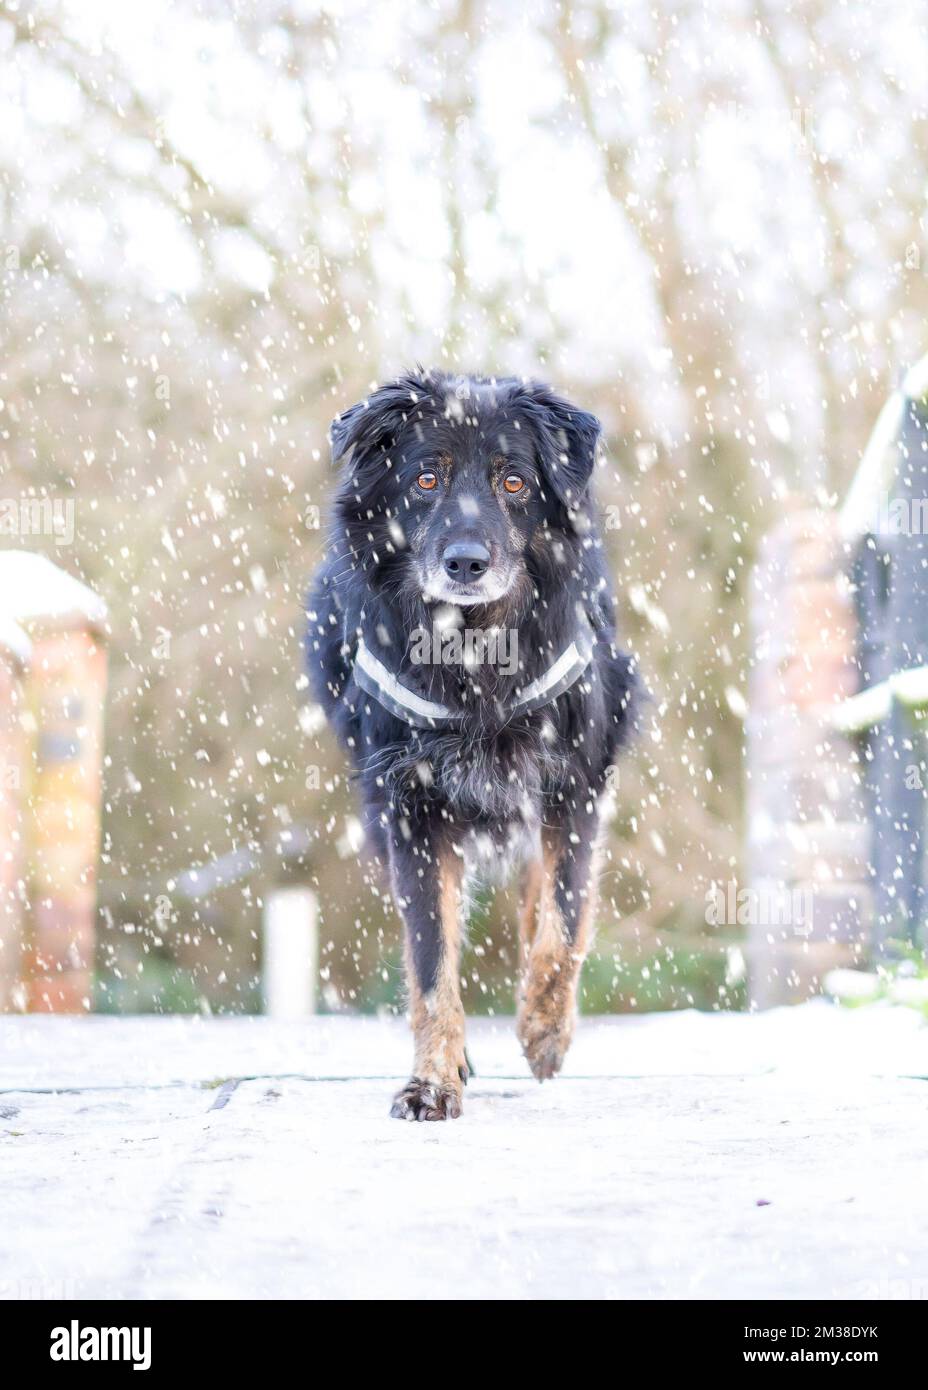 Gros plan d'un chien de compagnie (traversée de la frontière de collie) isolé à l'extérieur dans la neige qui tombe en hiver, marchant vers l'avant sur un pont de canal du Royaume-Uni, en regardant la caméra. Banque D'Images